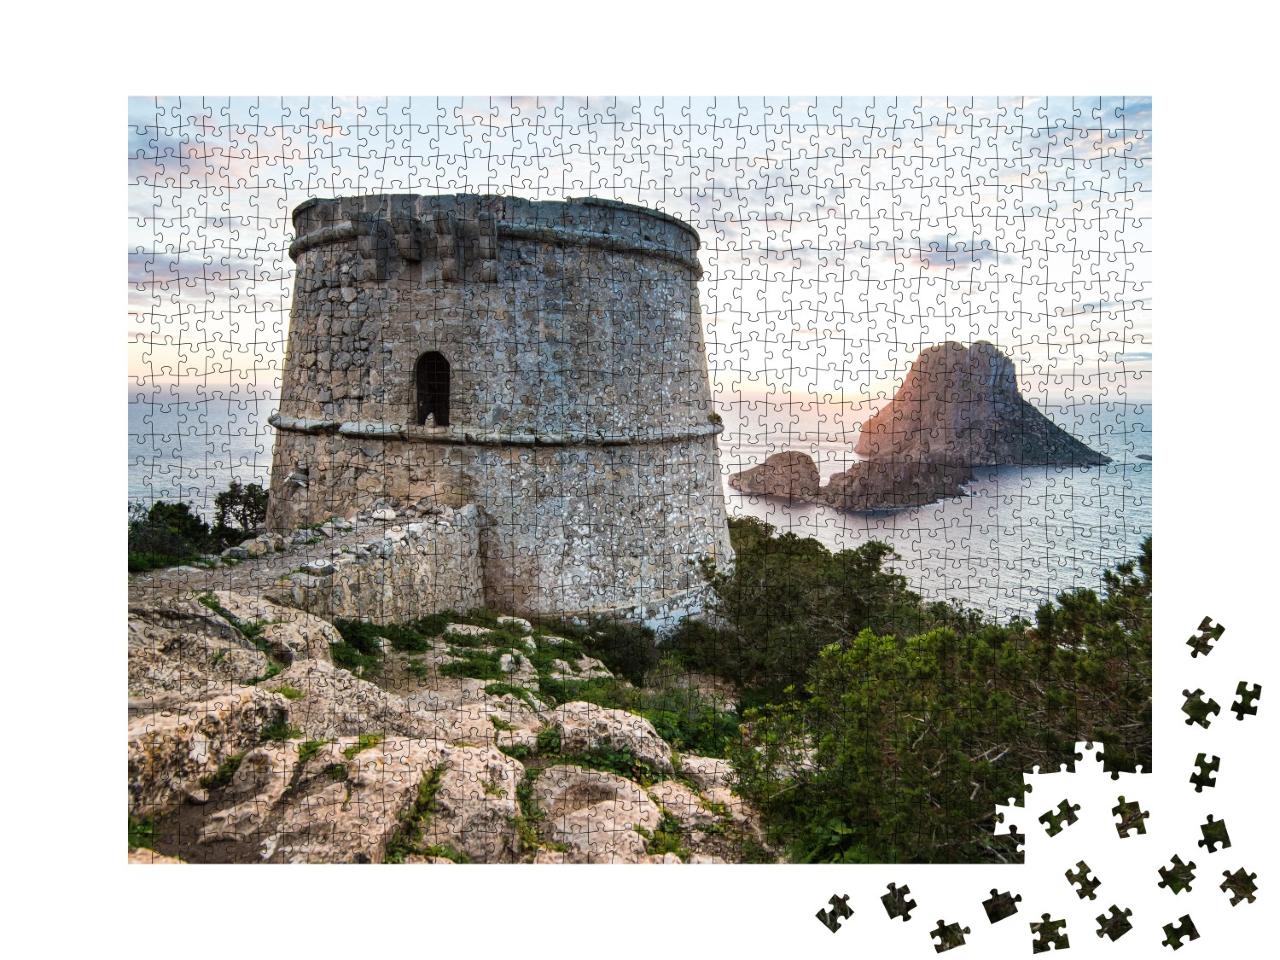 Puzzle de 1000 pièces « Coucher de soleil sur l'île d'Es Vedra, Ibiza »